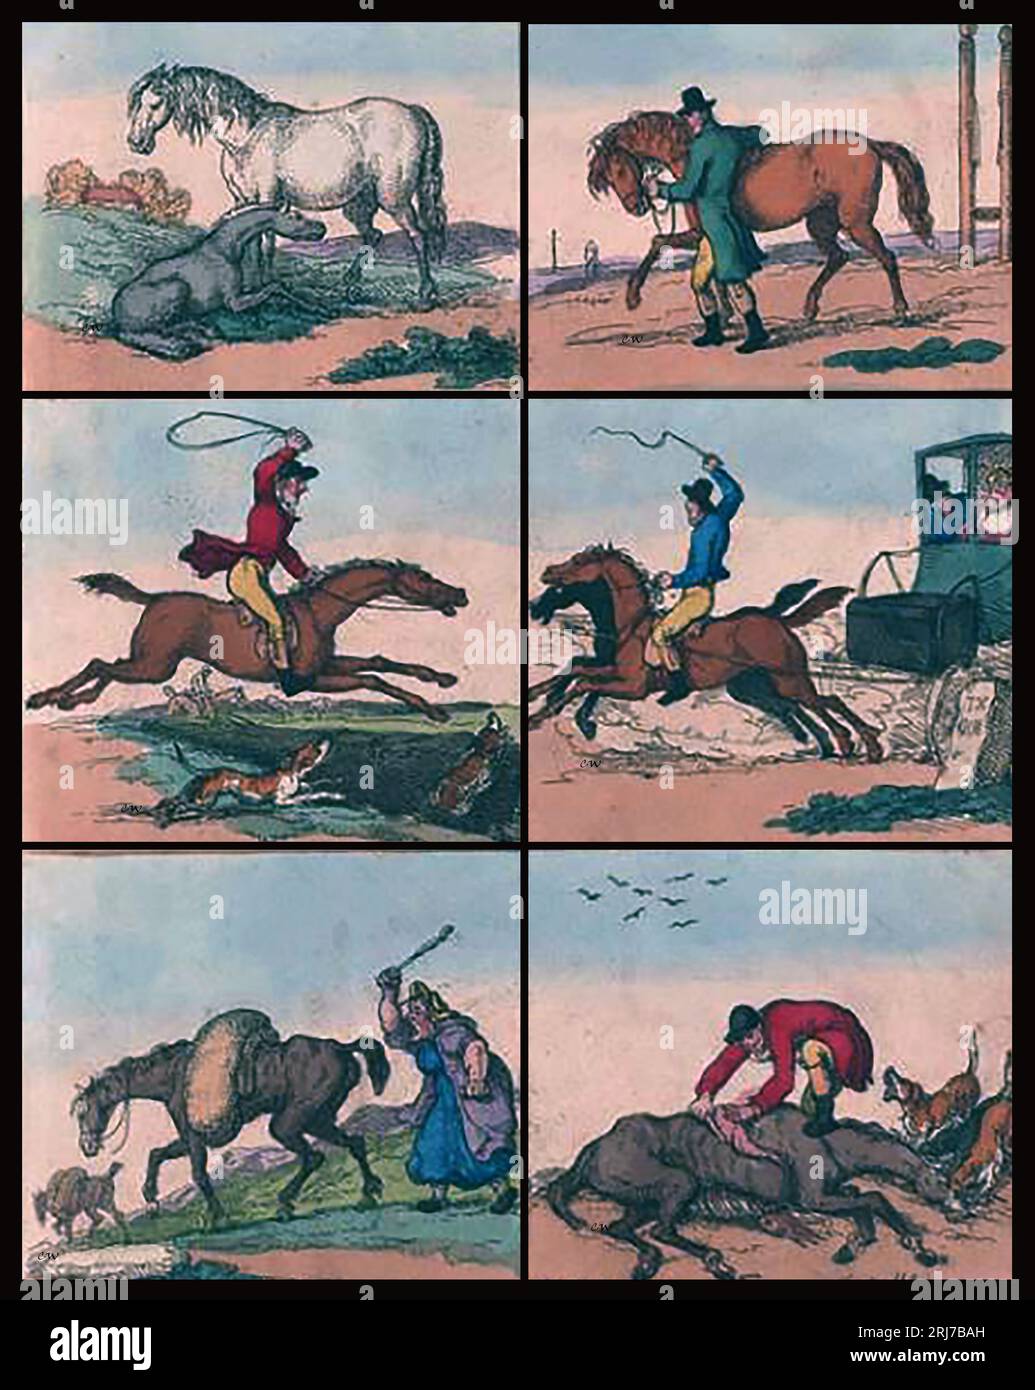 1811 illustration montrant la durée de vie d'un cheval moyen, montrant son utilisation progressive et son mauvais usage jusqu'à ce qu'il finisse par devenir de la viande de cheval. Banque D'Images